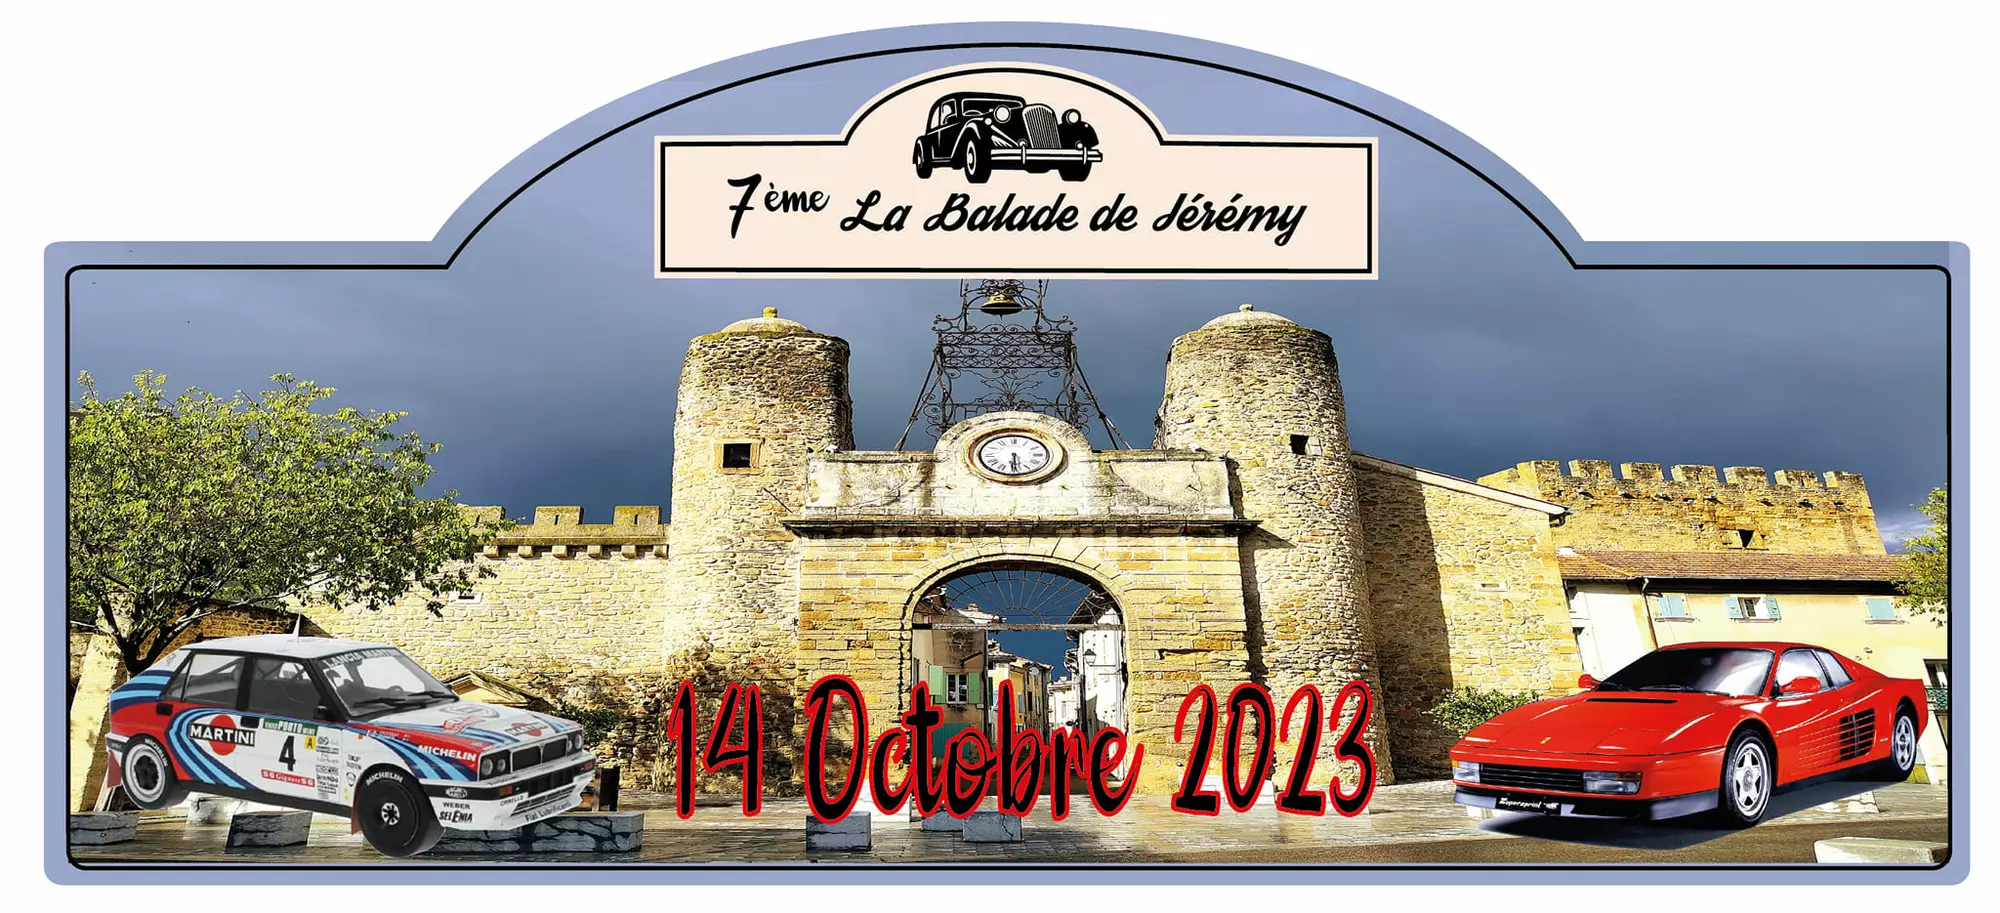 La 7ème Balade de Jérémy se déroulera le samedi 14 octobre 2023